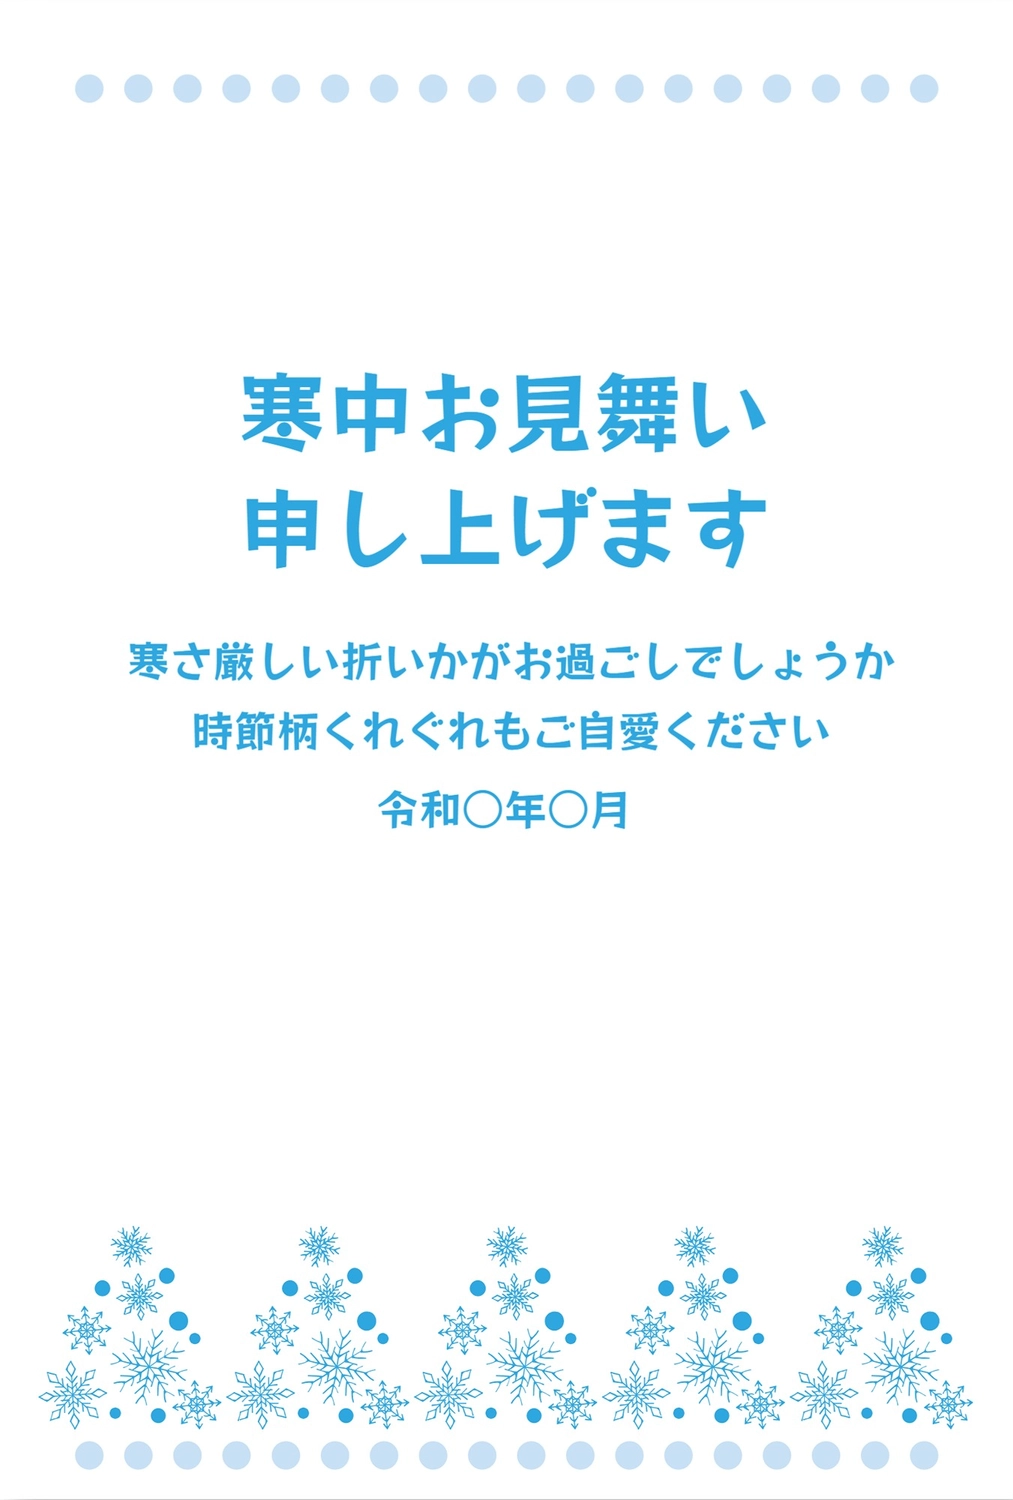 寒中見舞い　雪の結晶, Crystal of snow, February, greeting card, Mid-winter Greeting template